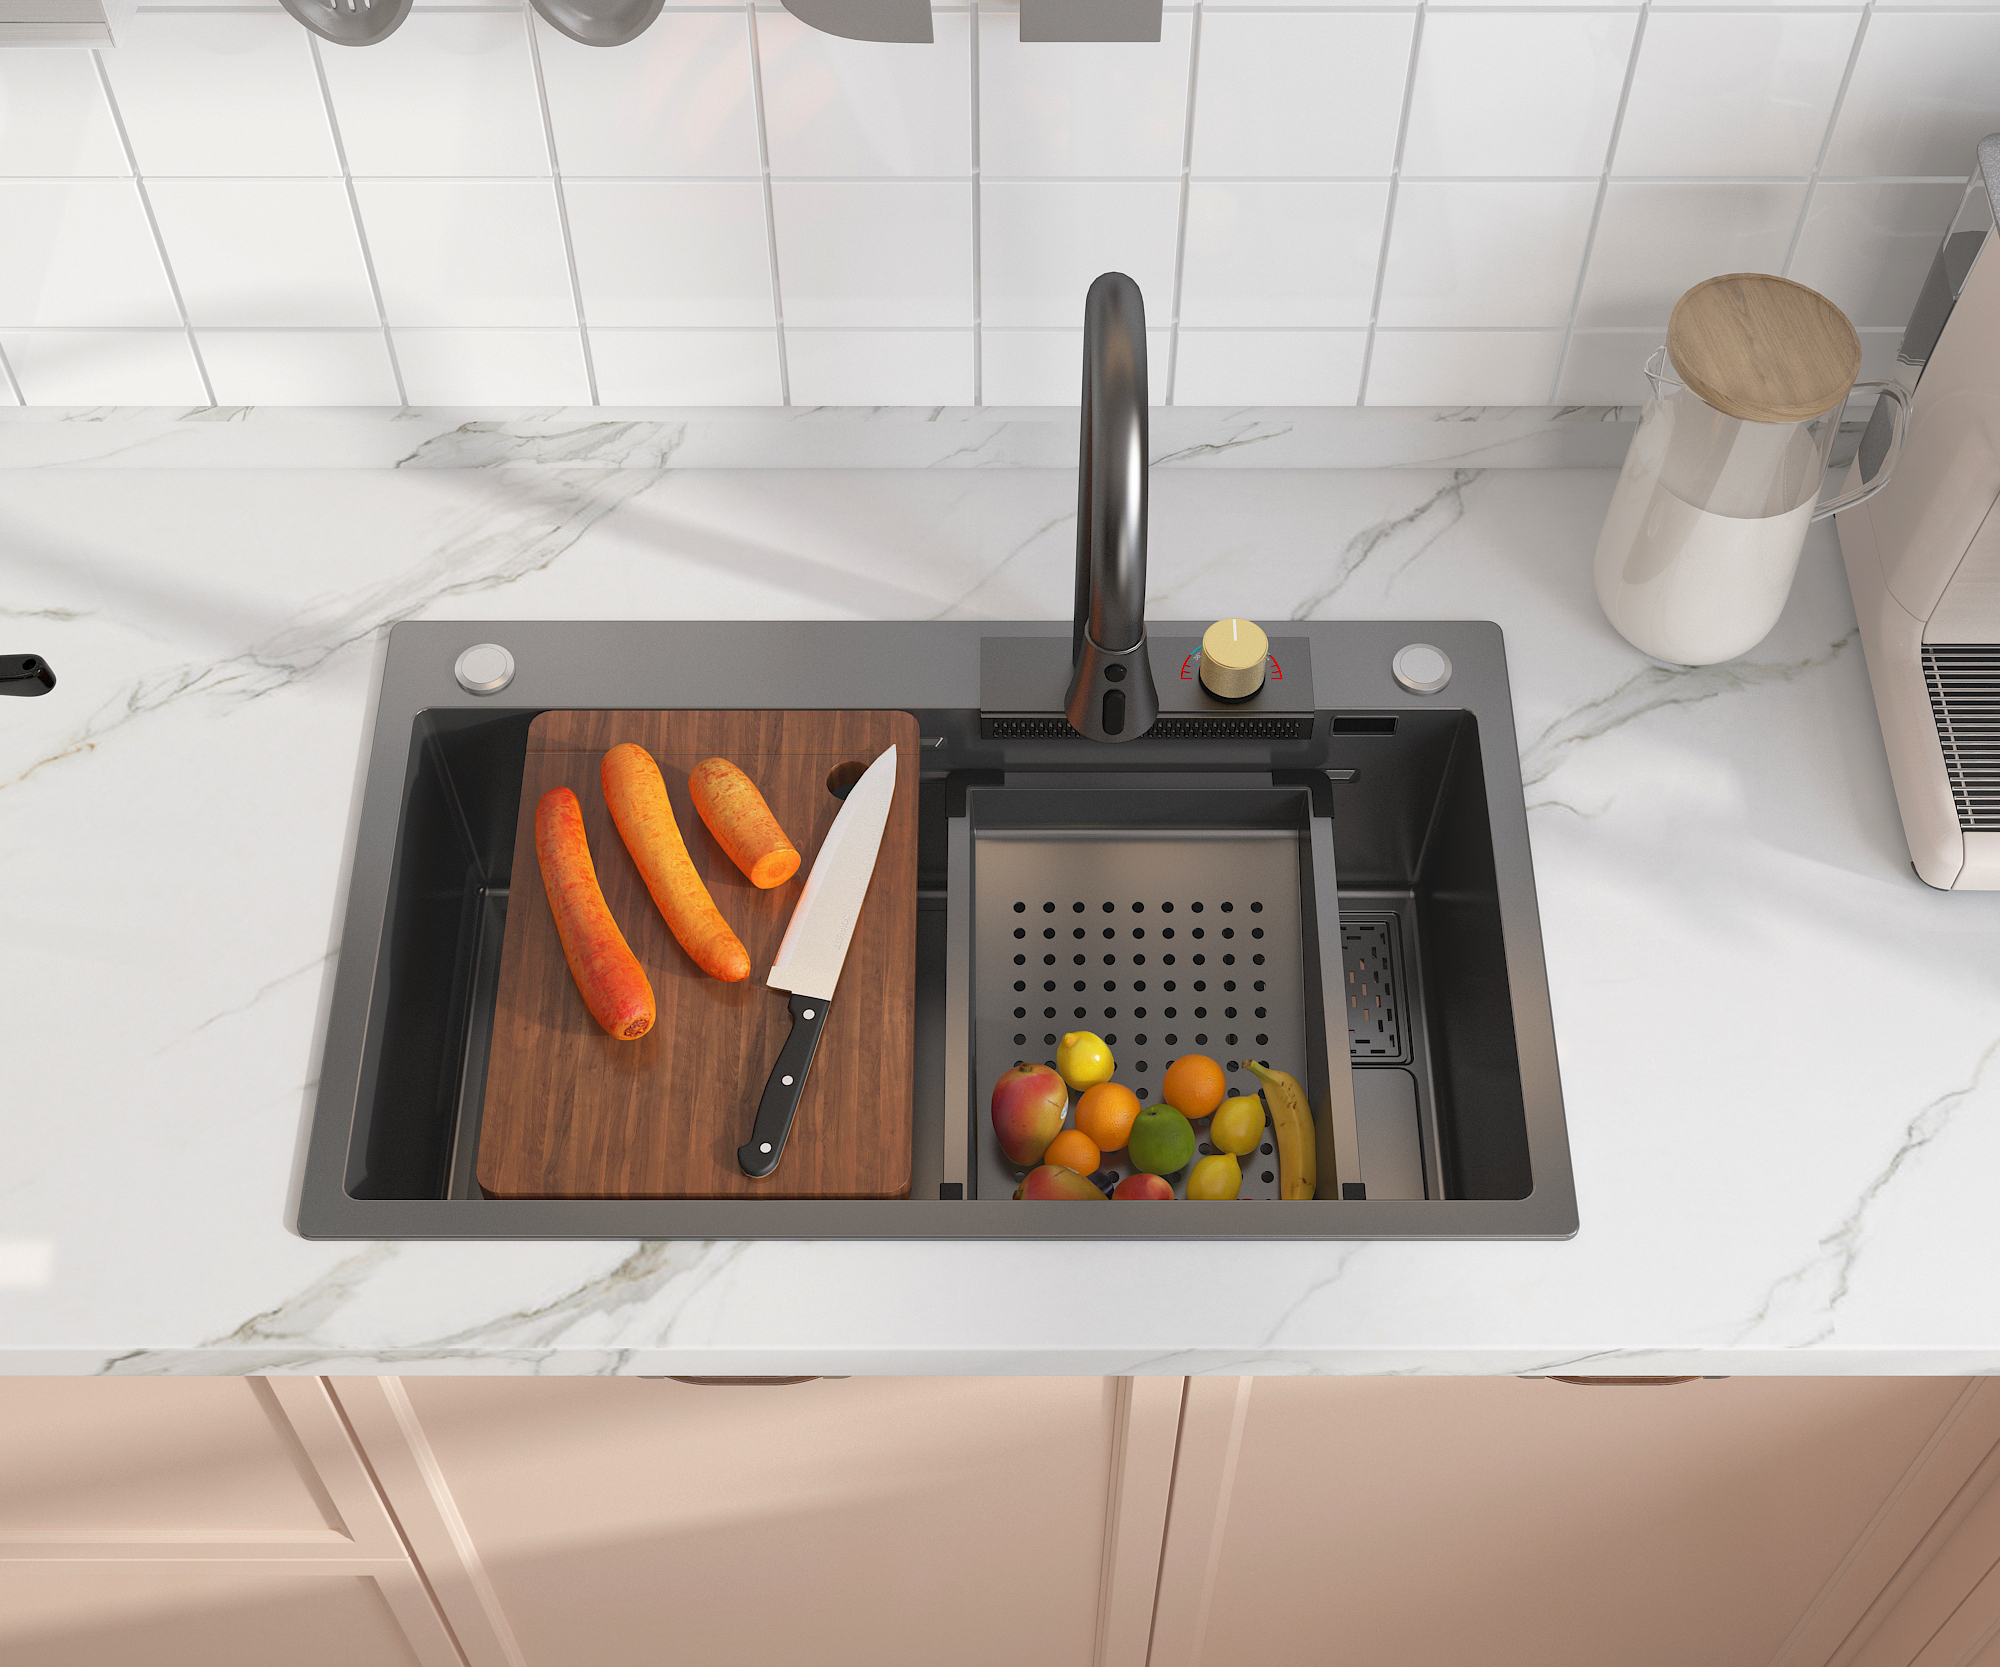 MEJE 30×18 Zoll Edelstahl-Küchenspüle, integriertes Wasserfall- und herunterziehbares Wasserhahn-Set, großes Spülbecken mit Nano-Beschichtung, graue Farbe